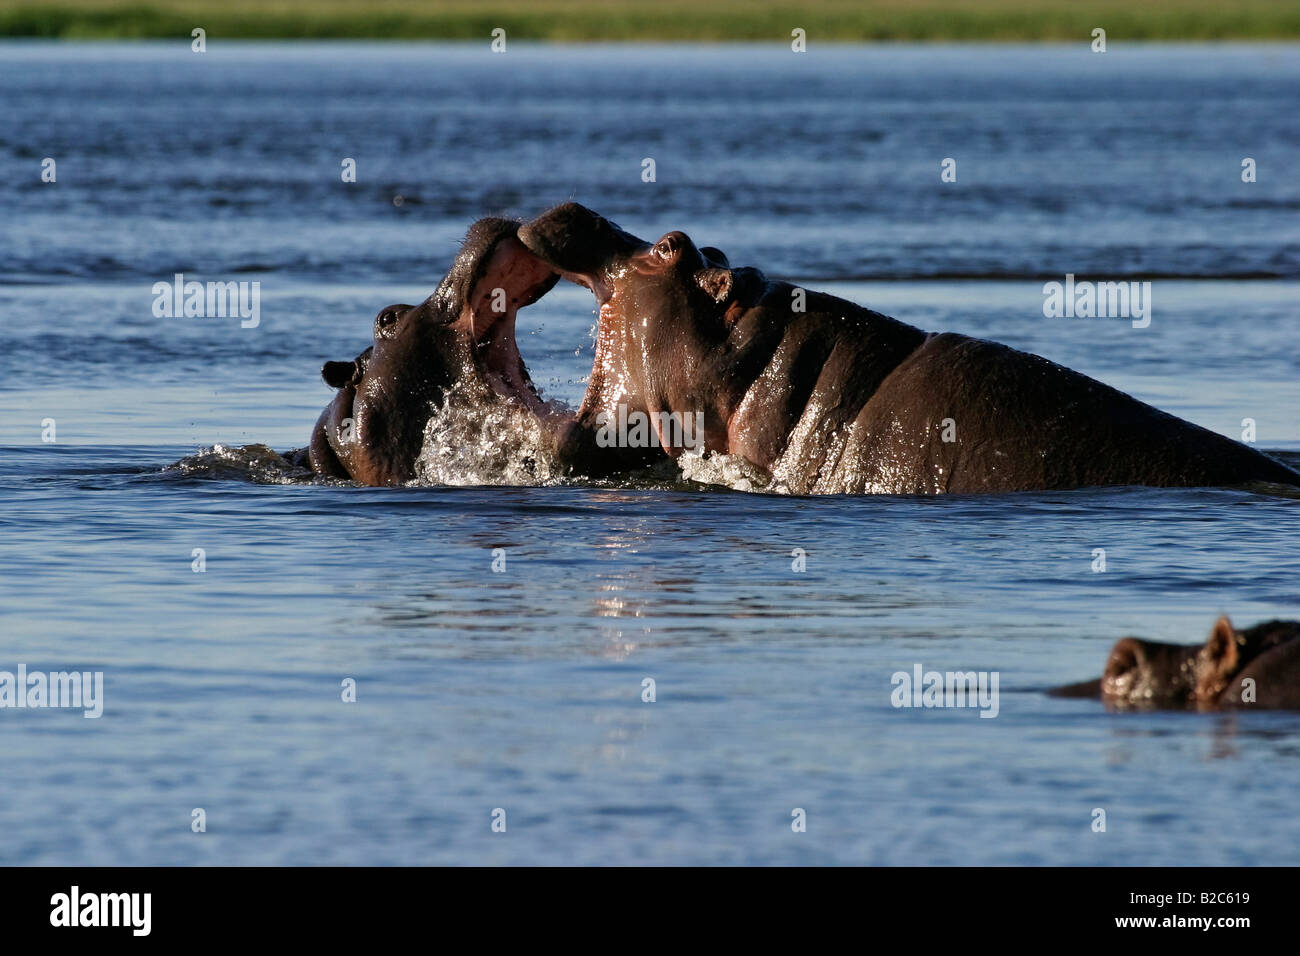 Hippopotami (Hippopotamus amphibius) fighting, Chobe River National Park, Botswana, Africa Stock Photo